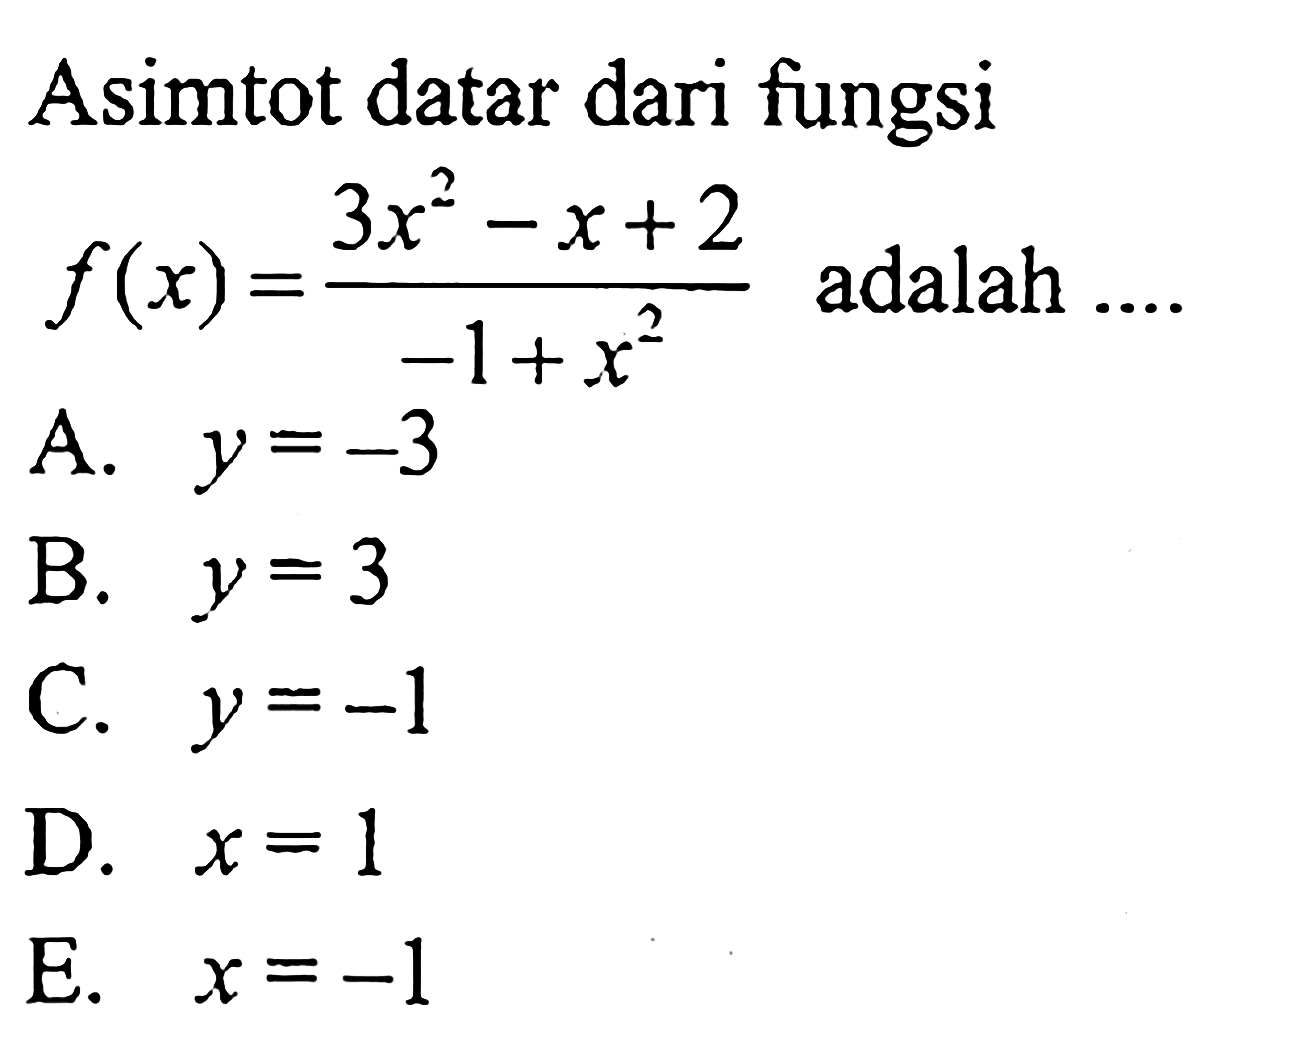 Asimtot datar dari fungsi f(x)=(3x^2-x+2)/(-1+x^2) adalah ....